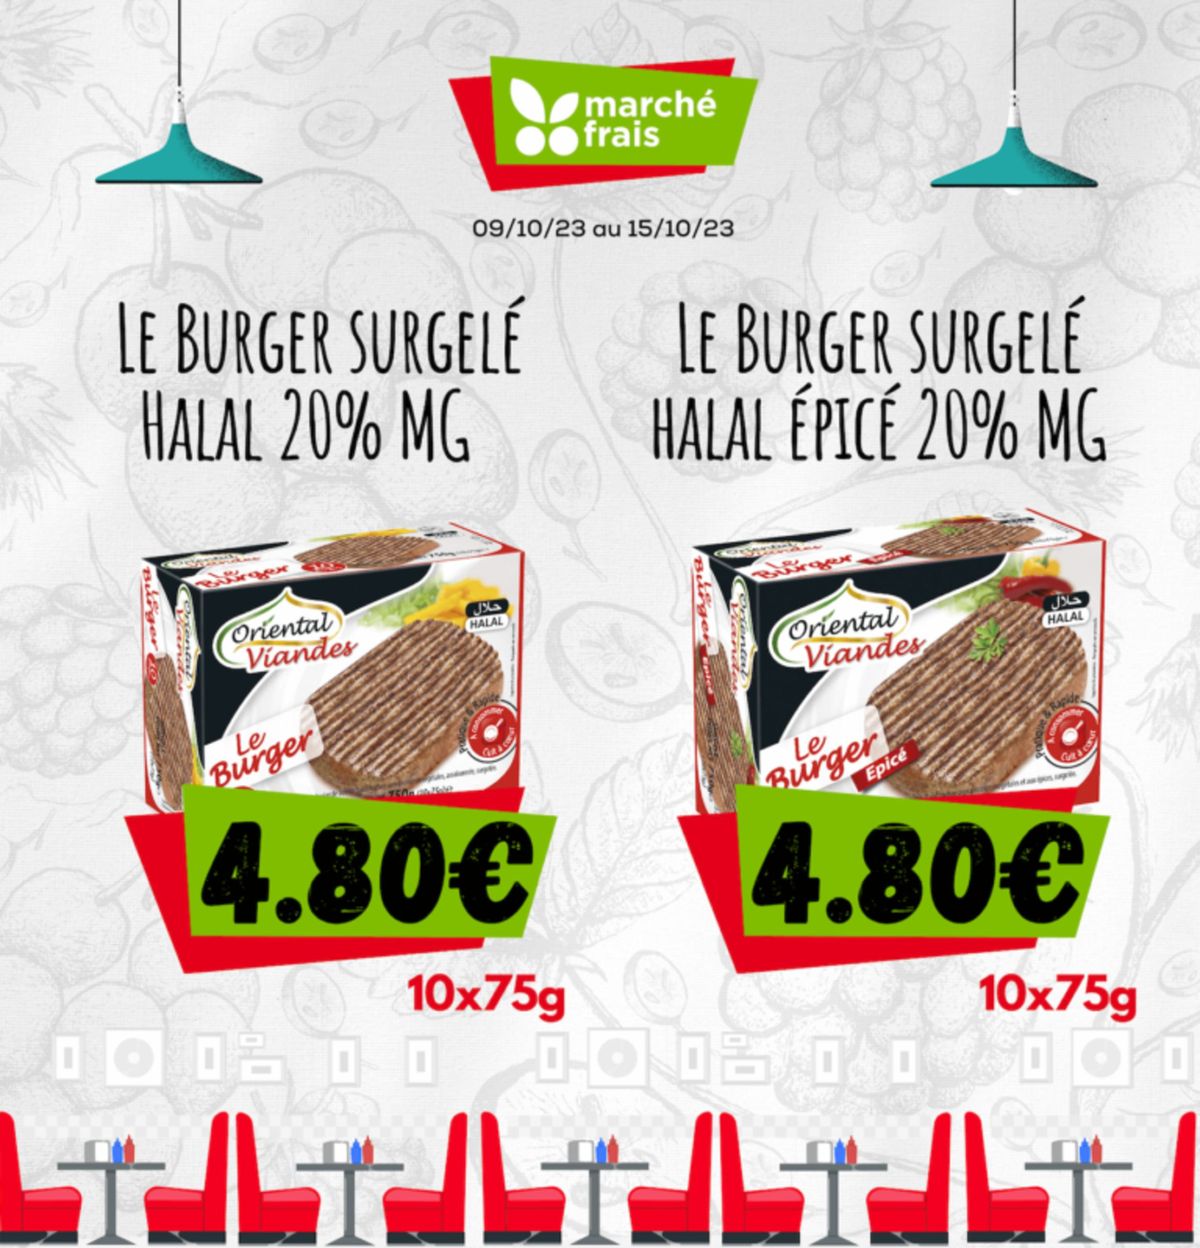 Catalogue Le burger surgelé halal oignon 20% mg, page 00003